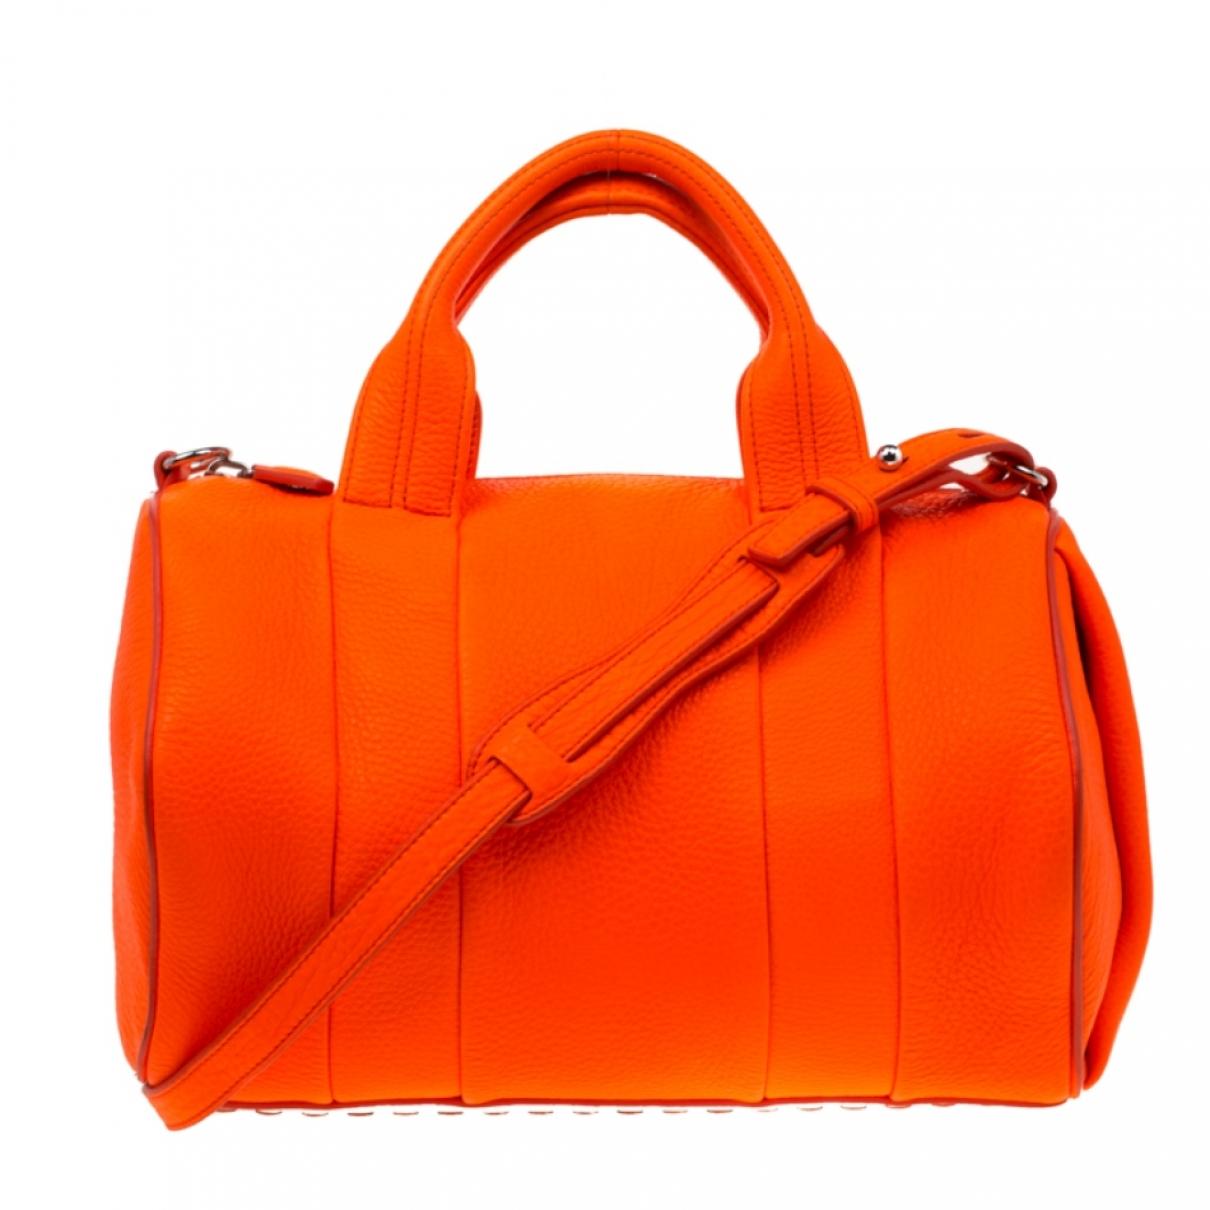 Alexander Wang Pre-owned Diego Orange Leather Handbags in Orange - Lyst